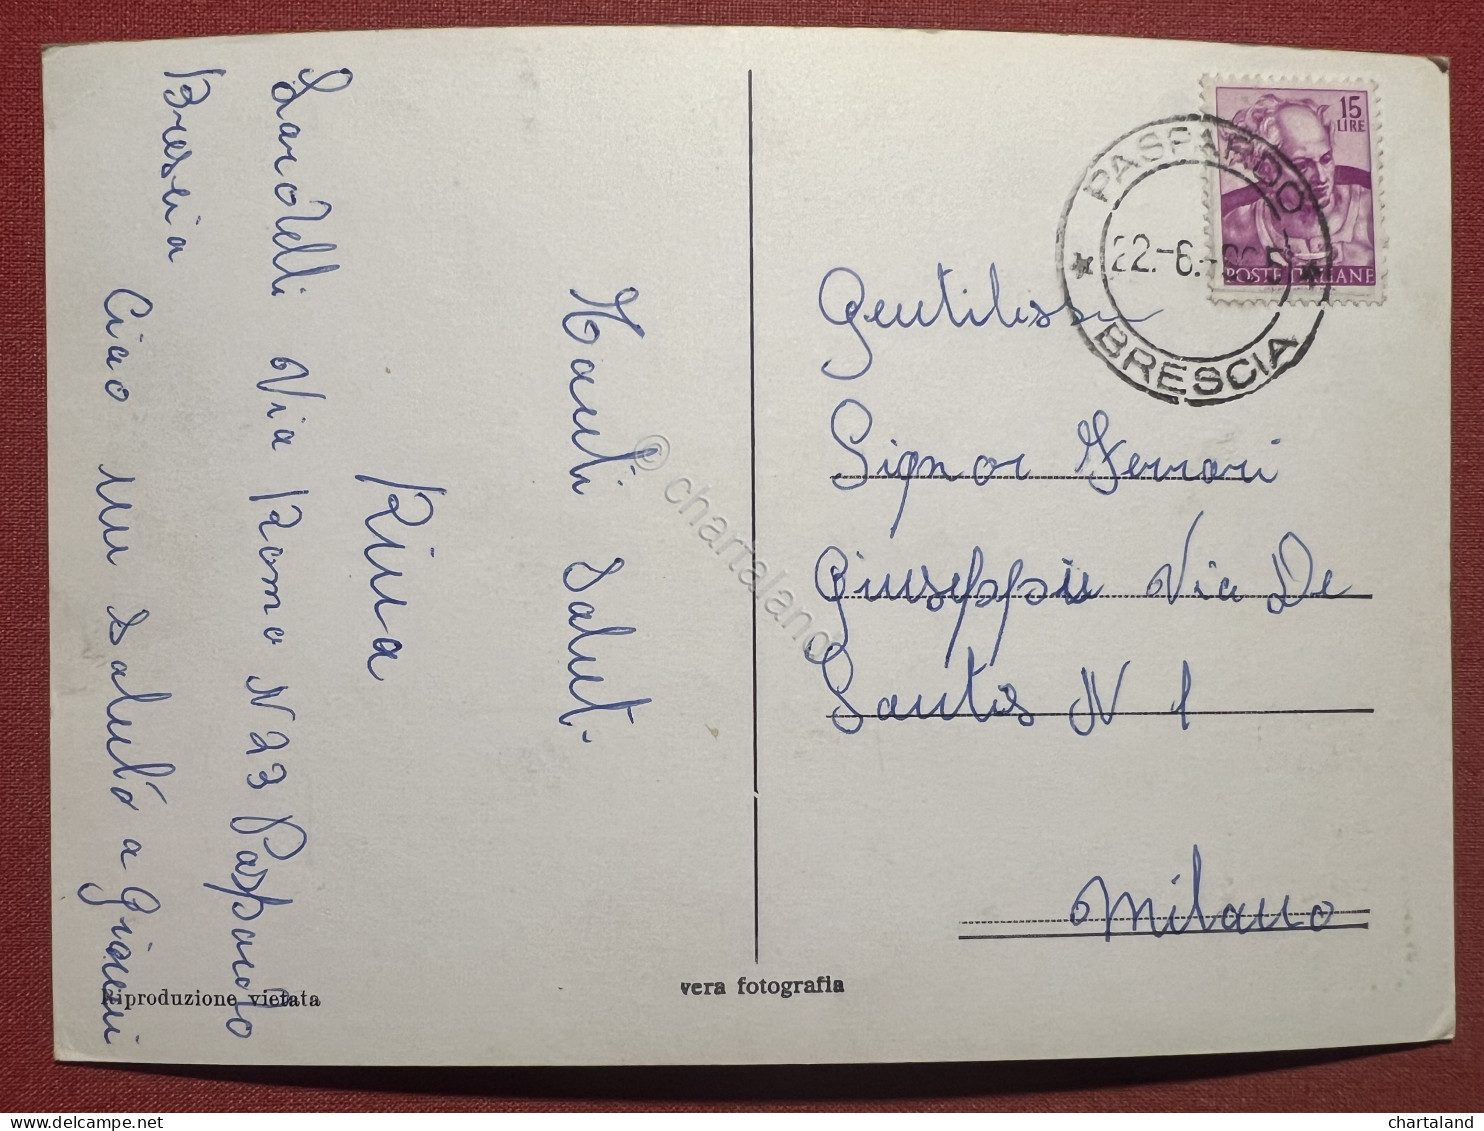 Cartolina - Saluti Da Paspardo ( Brescia ) - Vedute Diverse - 1965 - Brescia